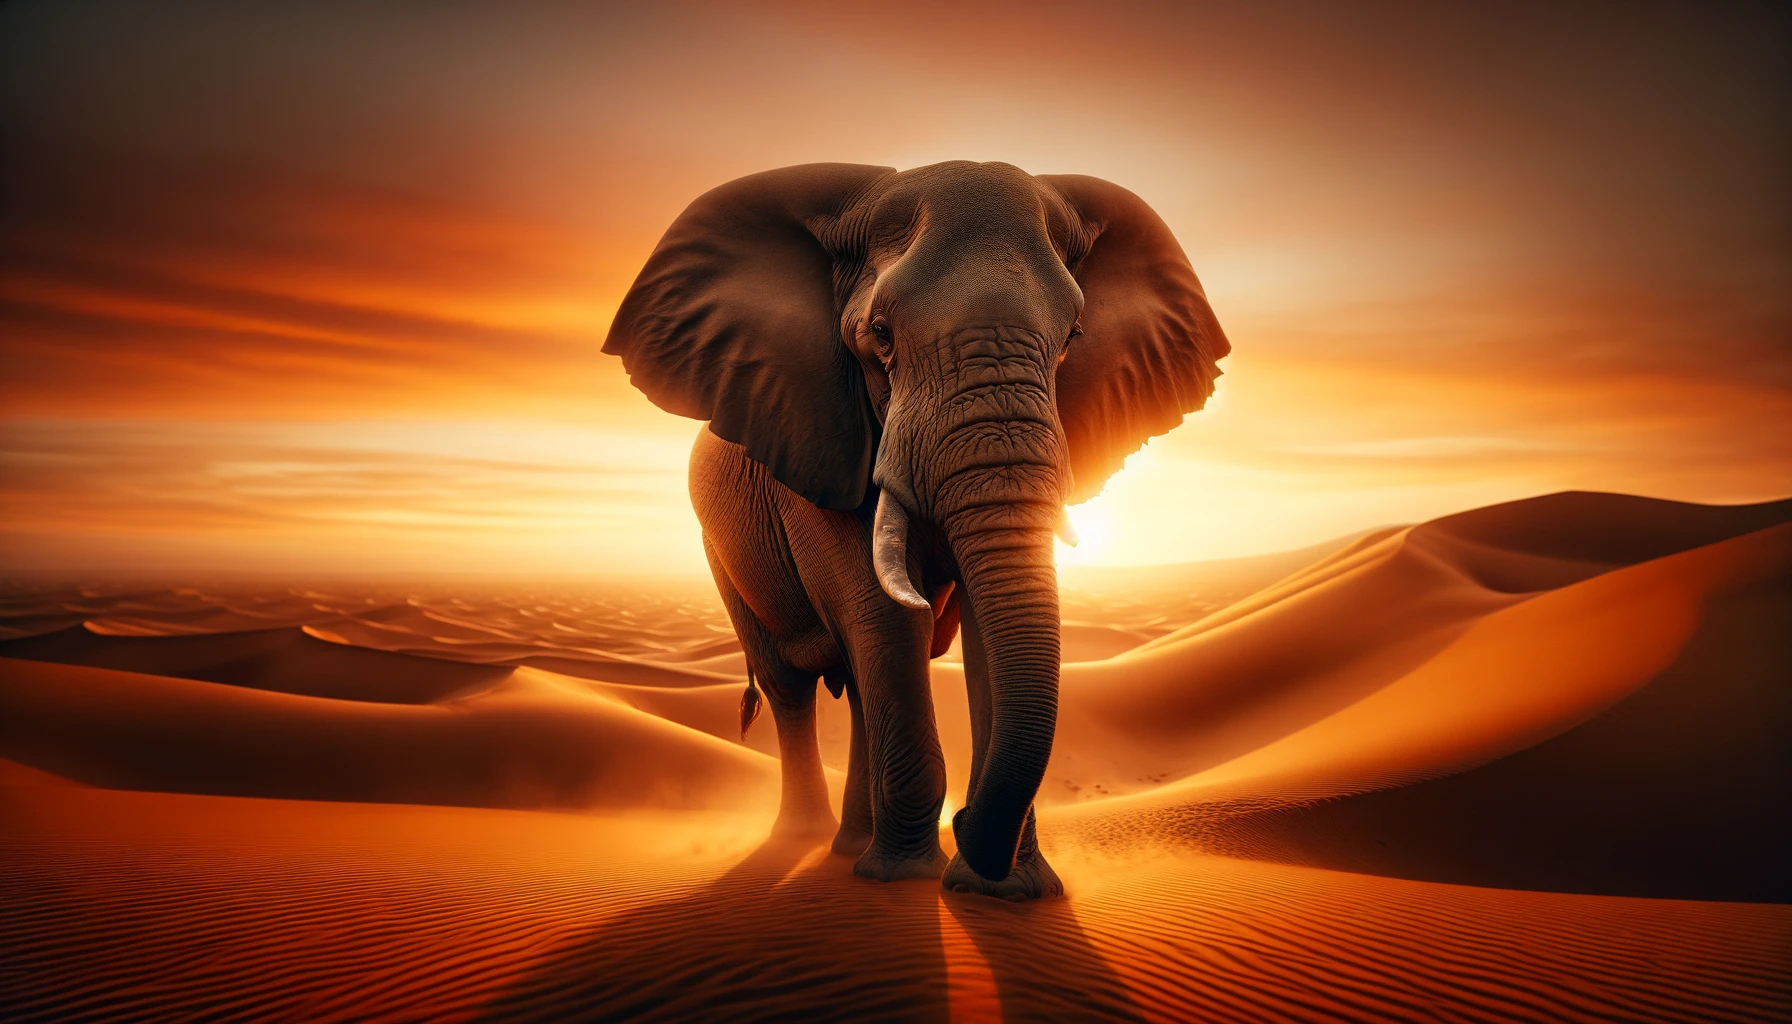 Elefant in der Wüste sehr hochwertig und fotorealistisch mit Dall-E 3 generiert